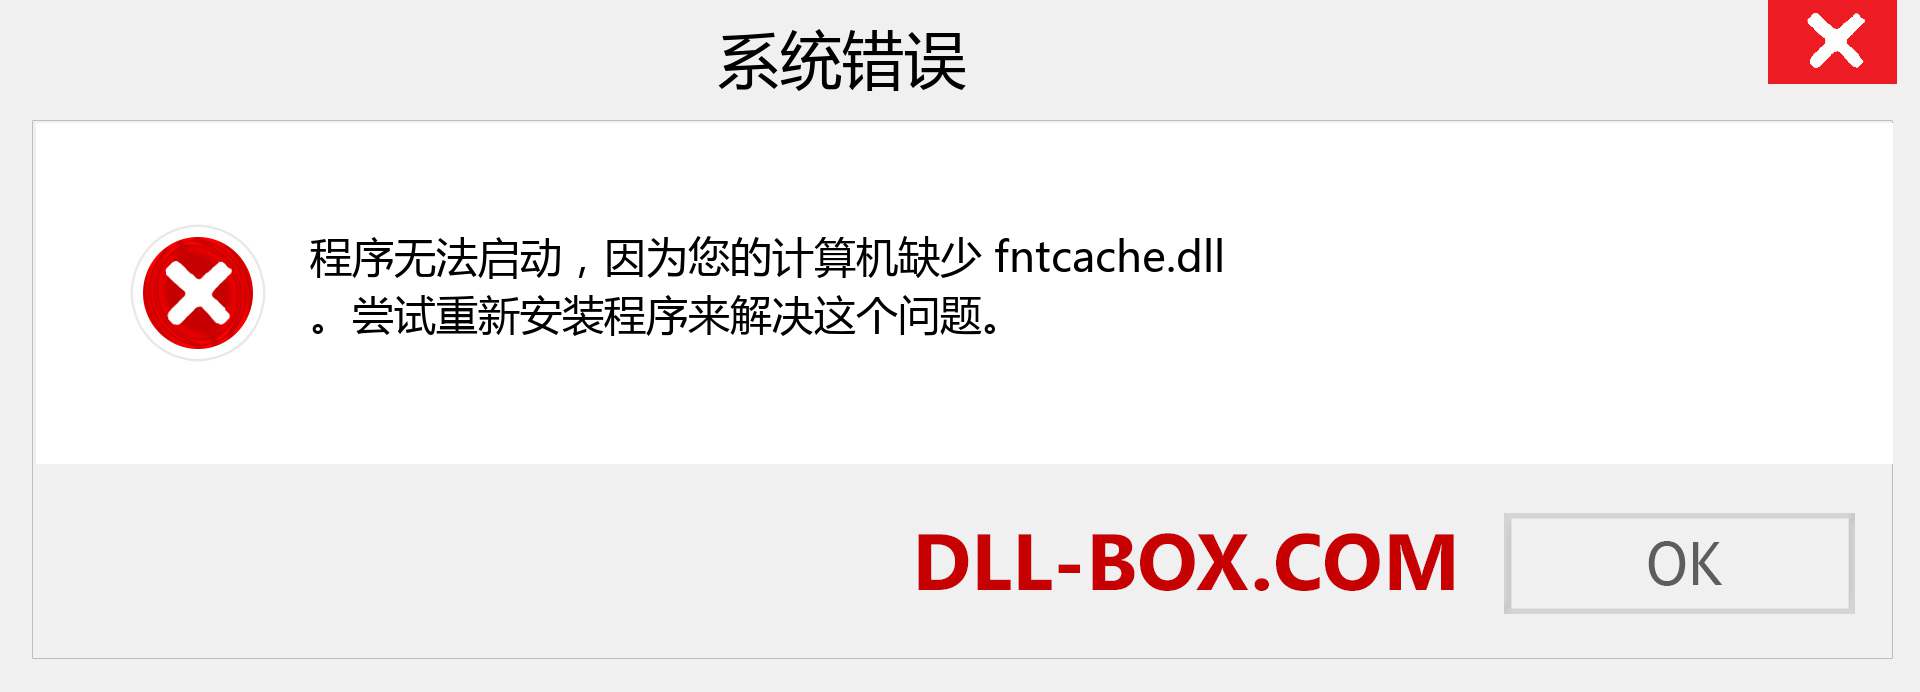 fntcache.dll 文件丢失？。 适用于 Windows 7、8、10 的下载 - 修复 Windows、照片、图像上的 fntcache dll 丢失错误